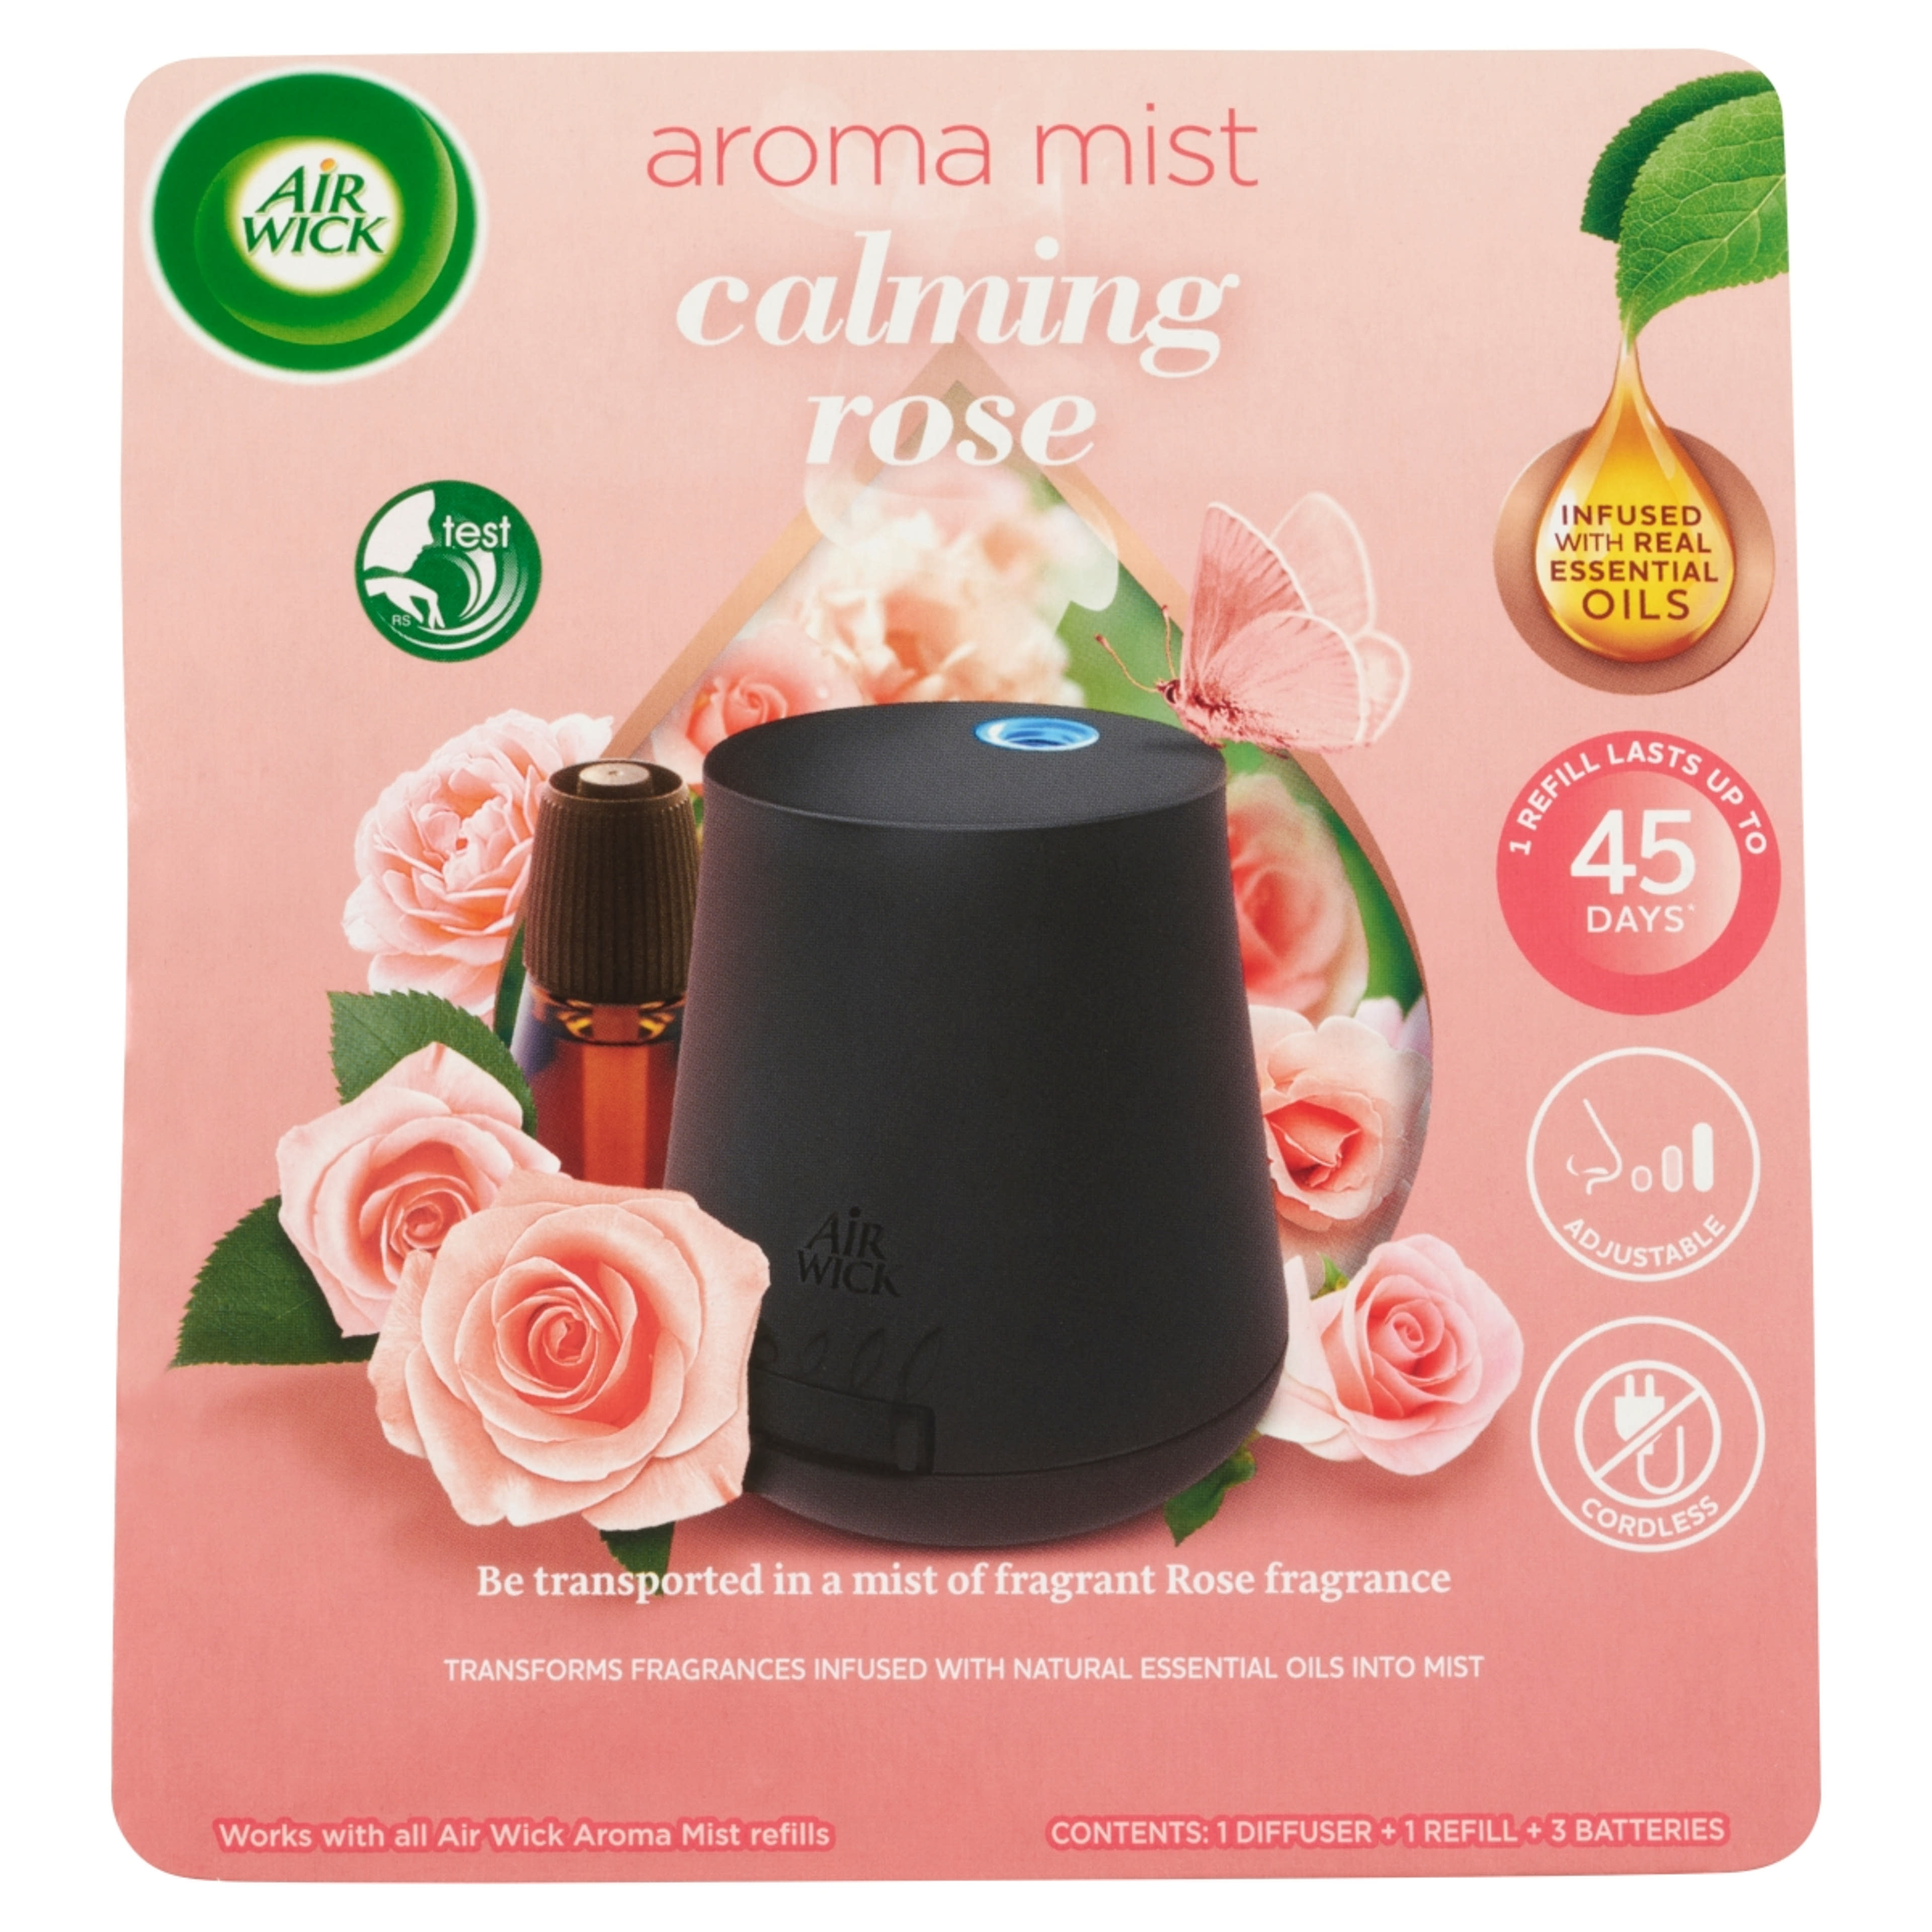 Air Wick Aroma Mist Nyugtató rózsa illat aroma diffúzor készülék és utántöltő - 20 ml-1